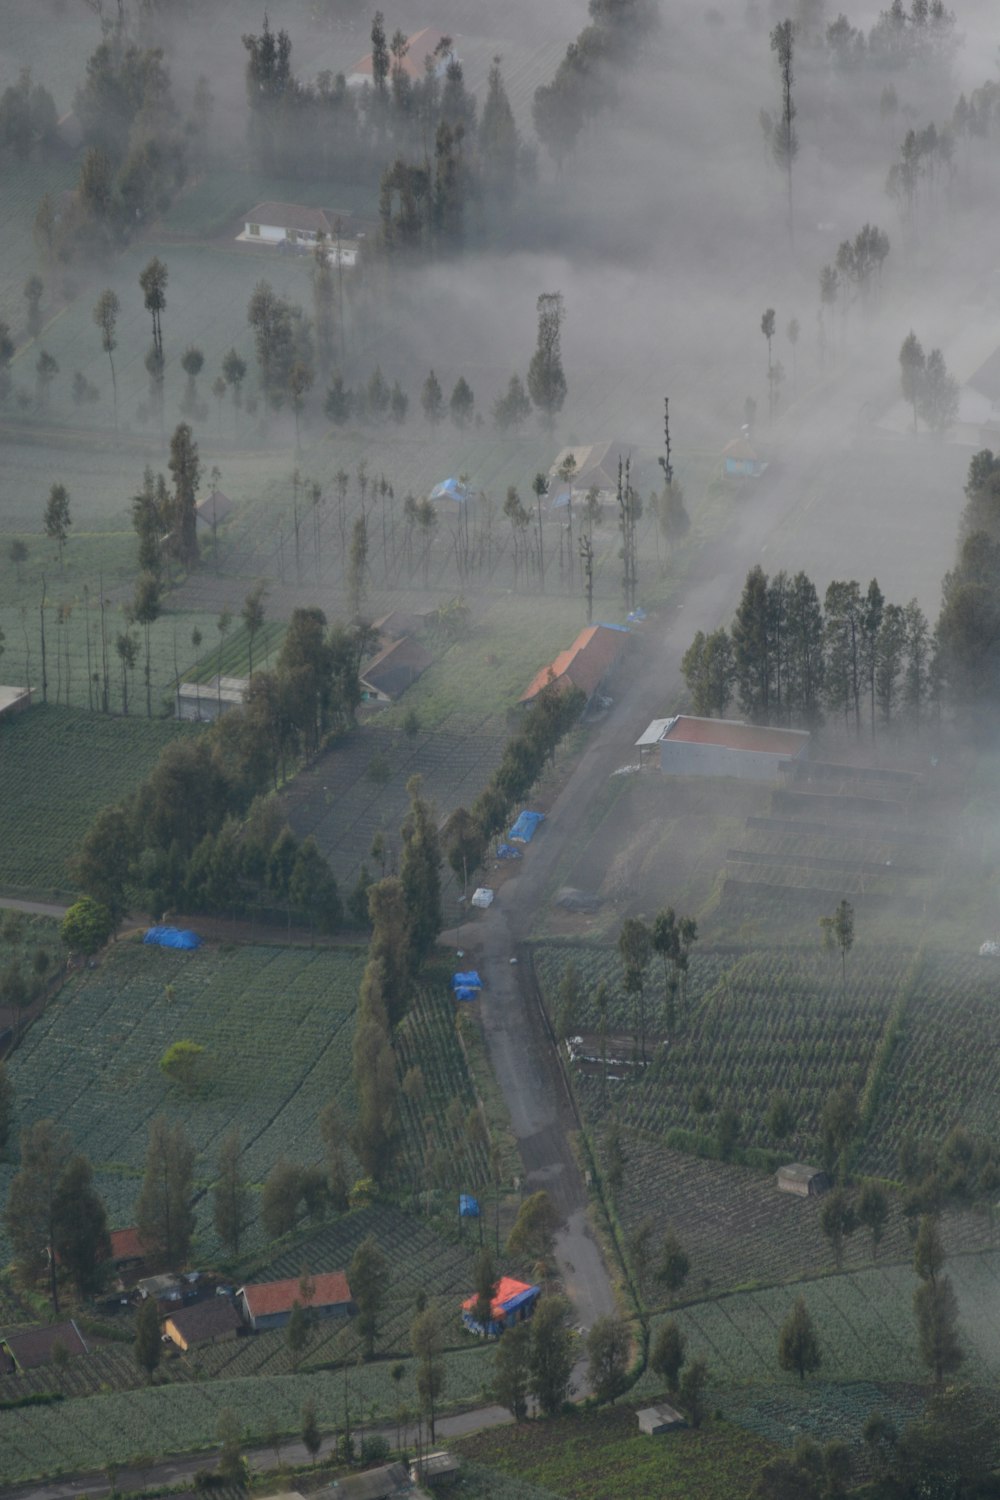 Una veduta aerea di una zona rurale nella nebbia